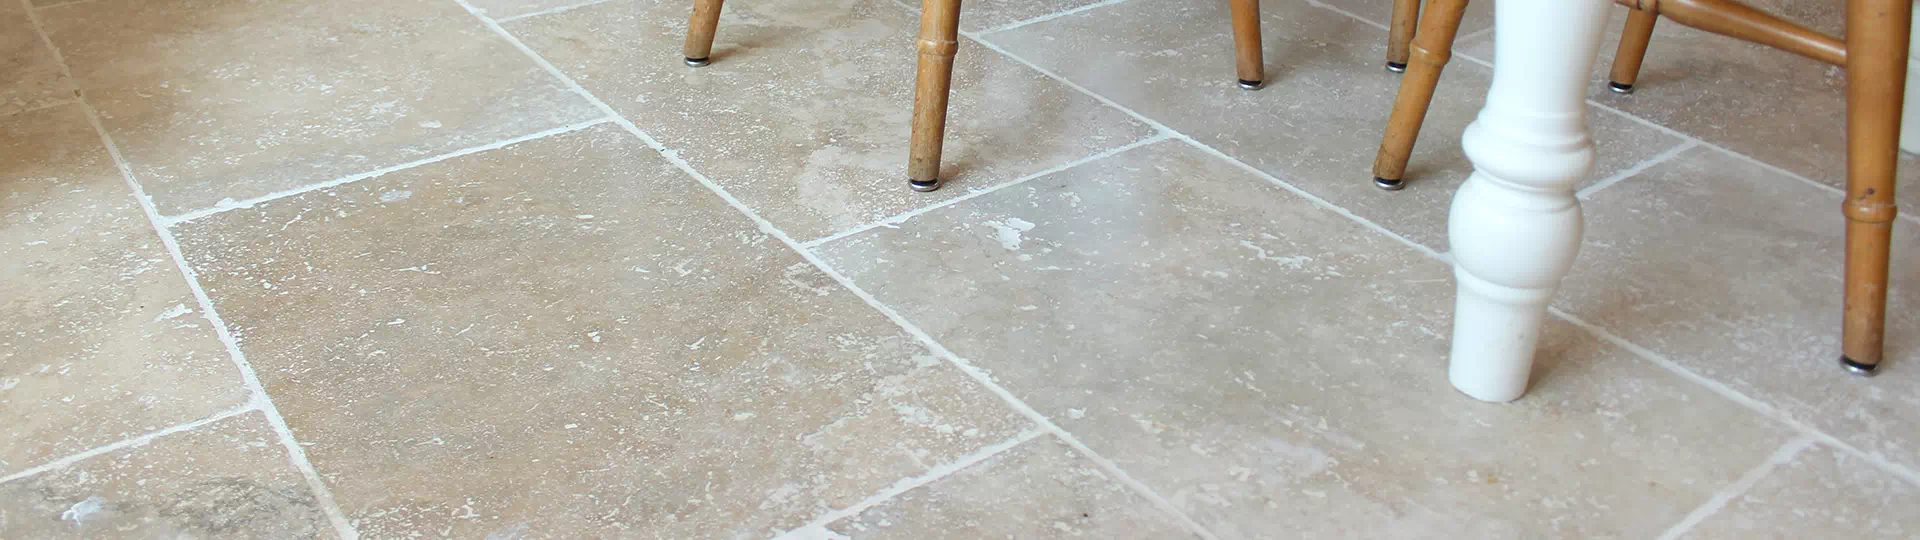 How To Clean Travertine Floors Simple, Sealing Travertine Floor Tiles